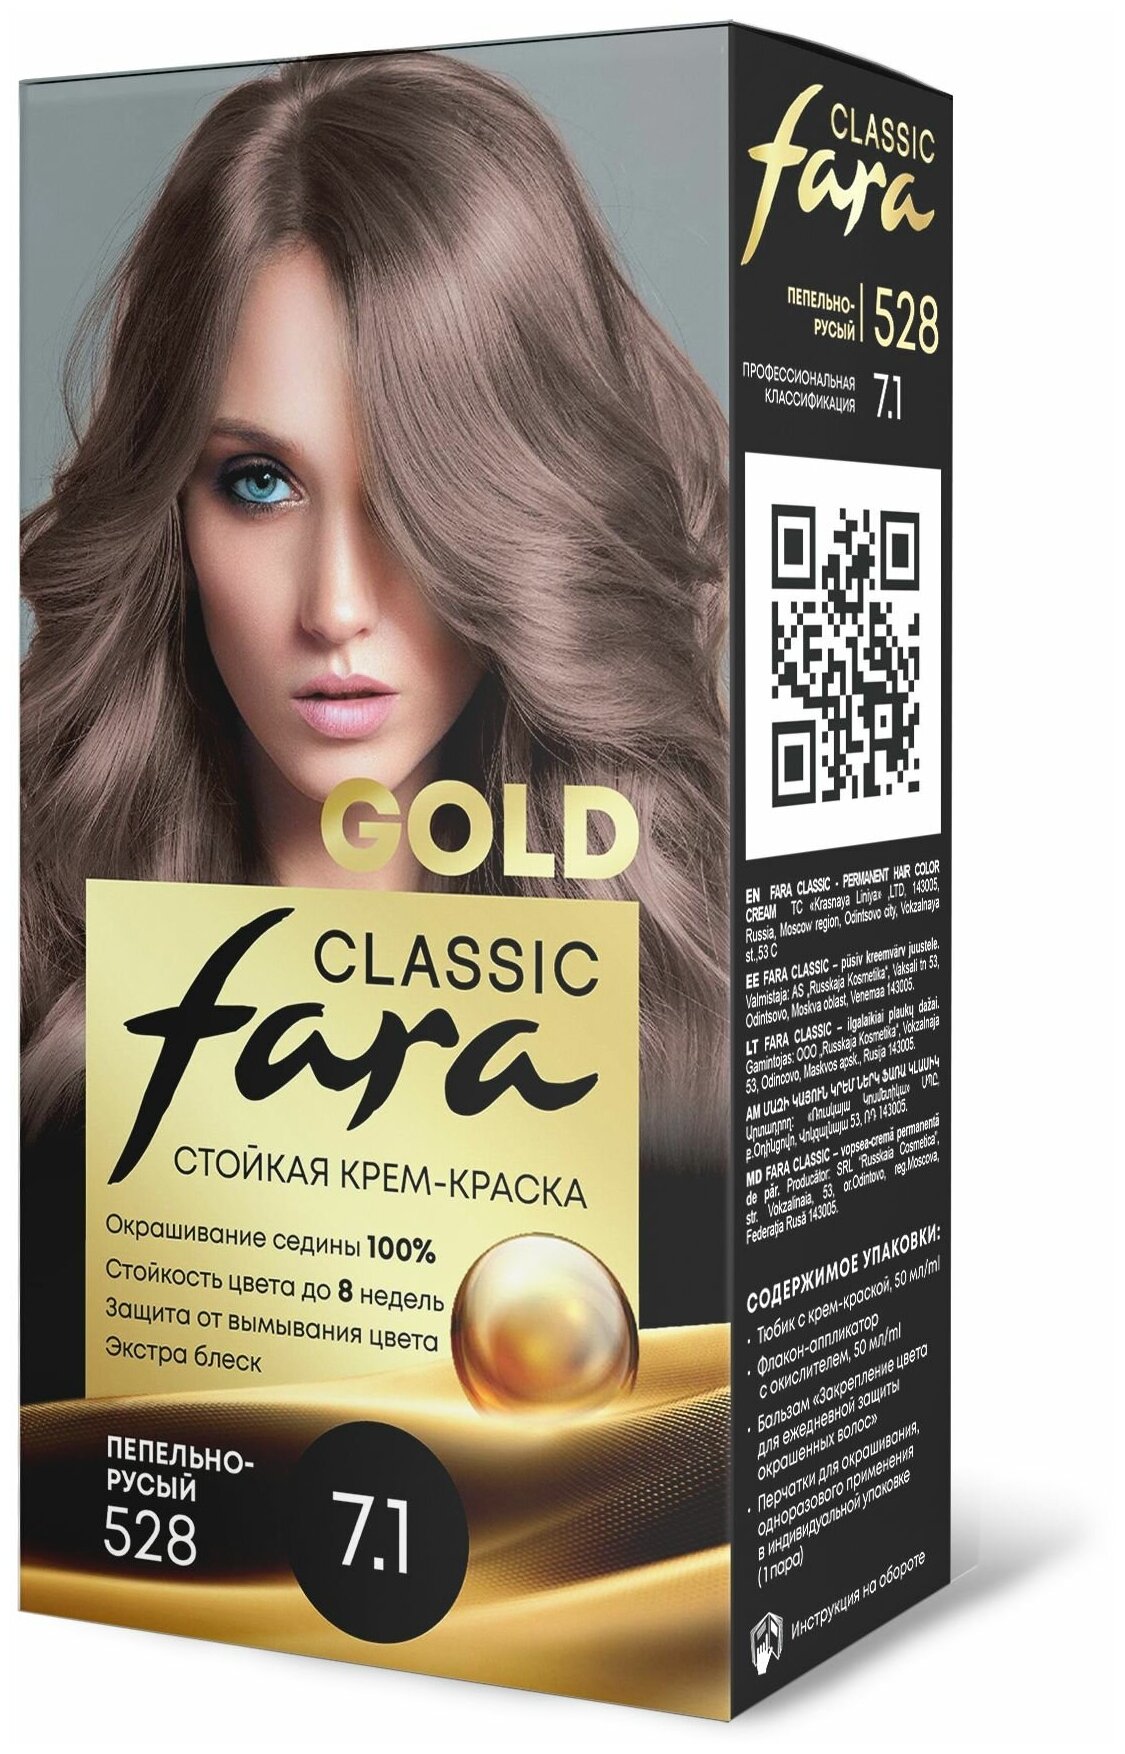 Fara Classic Gold Стойкая крем краска для волос 528 Пепельно-русый 7.1